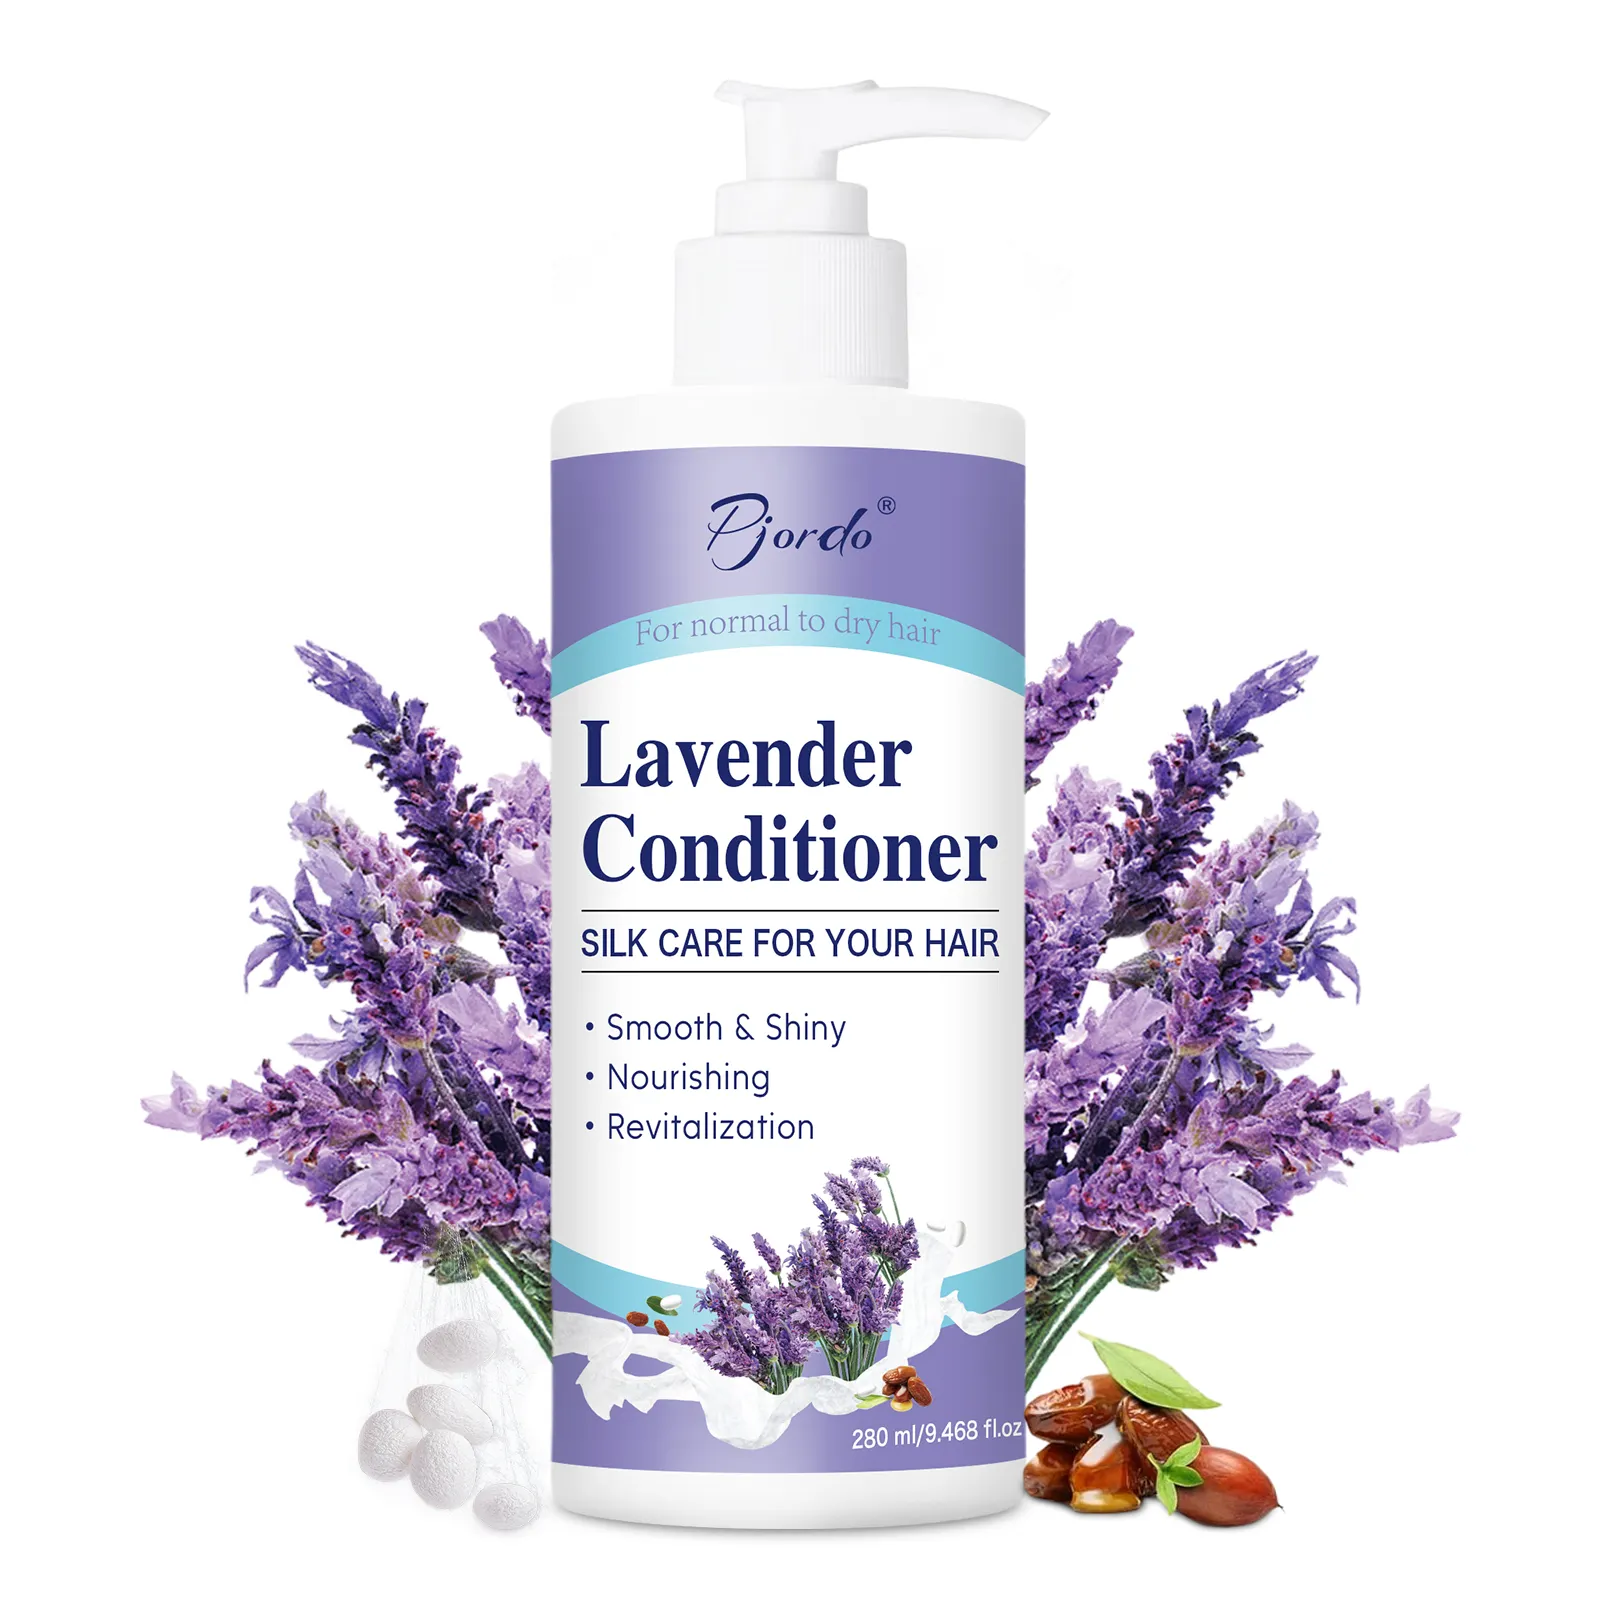 Aangepaste Label Originele Haarconditioner Lavendel Haarconditioner Toevoegen Glans Reparatie Voedt Plantaardige Conditioner Product Oem/Odm